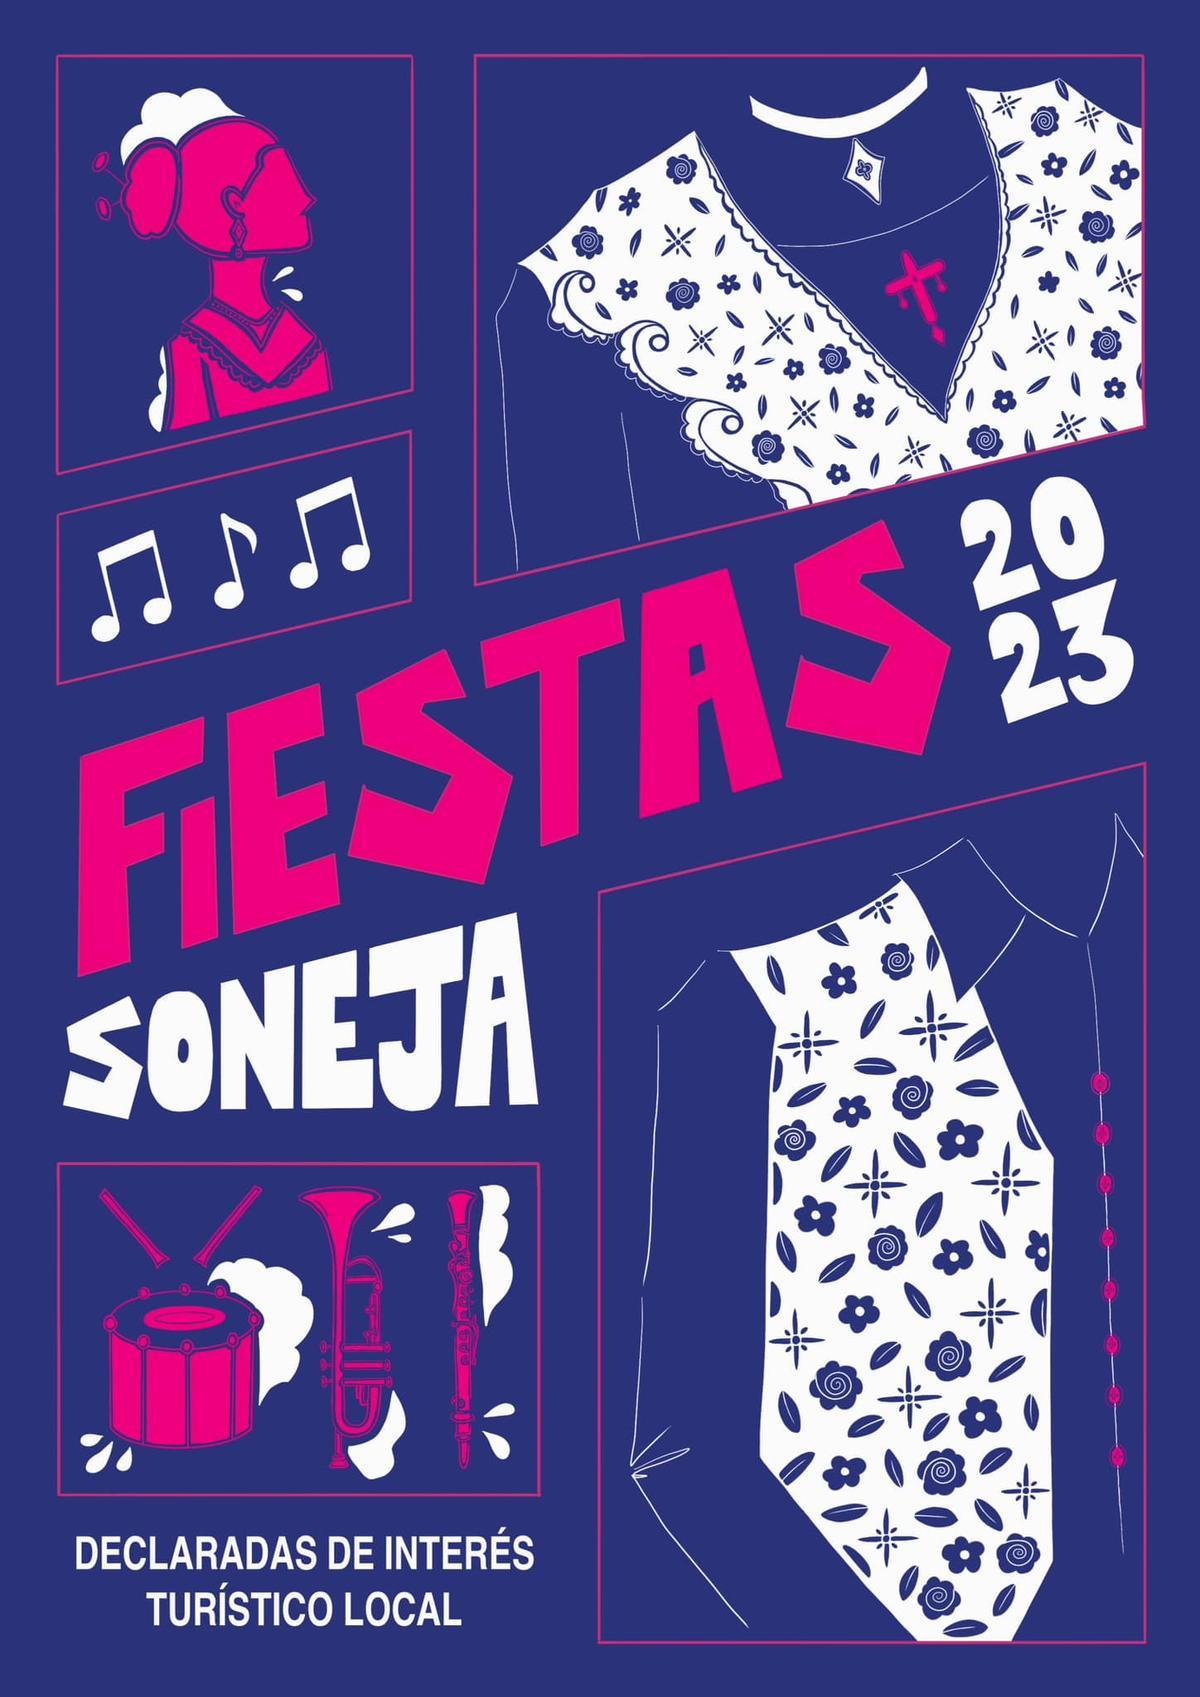 Diseño ganador para ilustrar el libro de fiestas de Soneja.